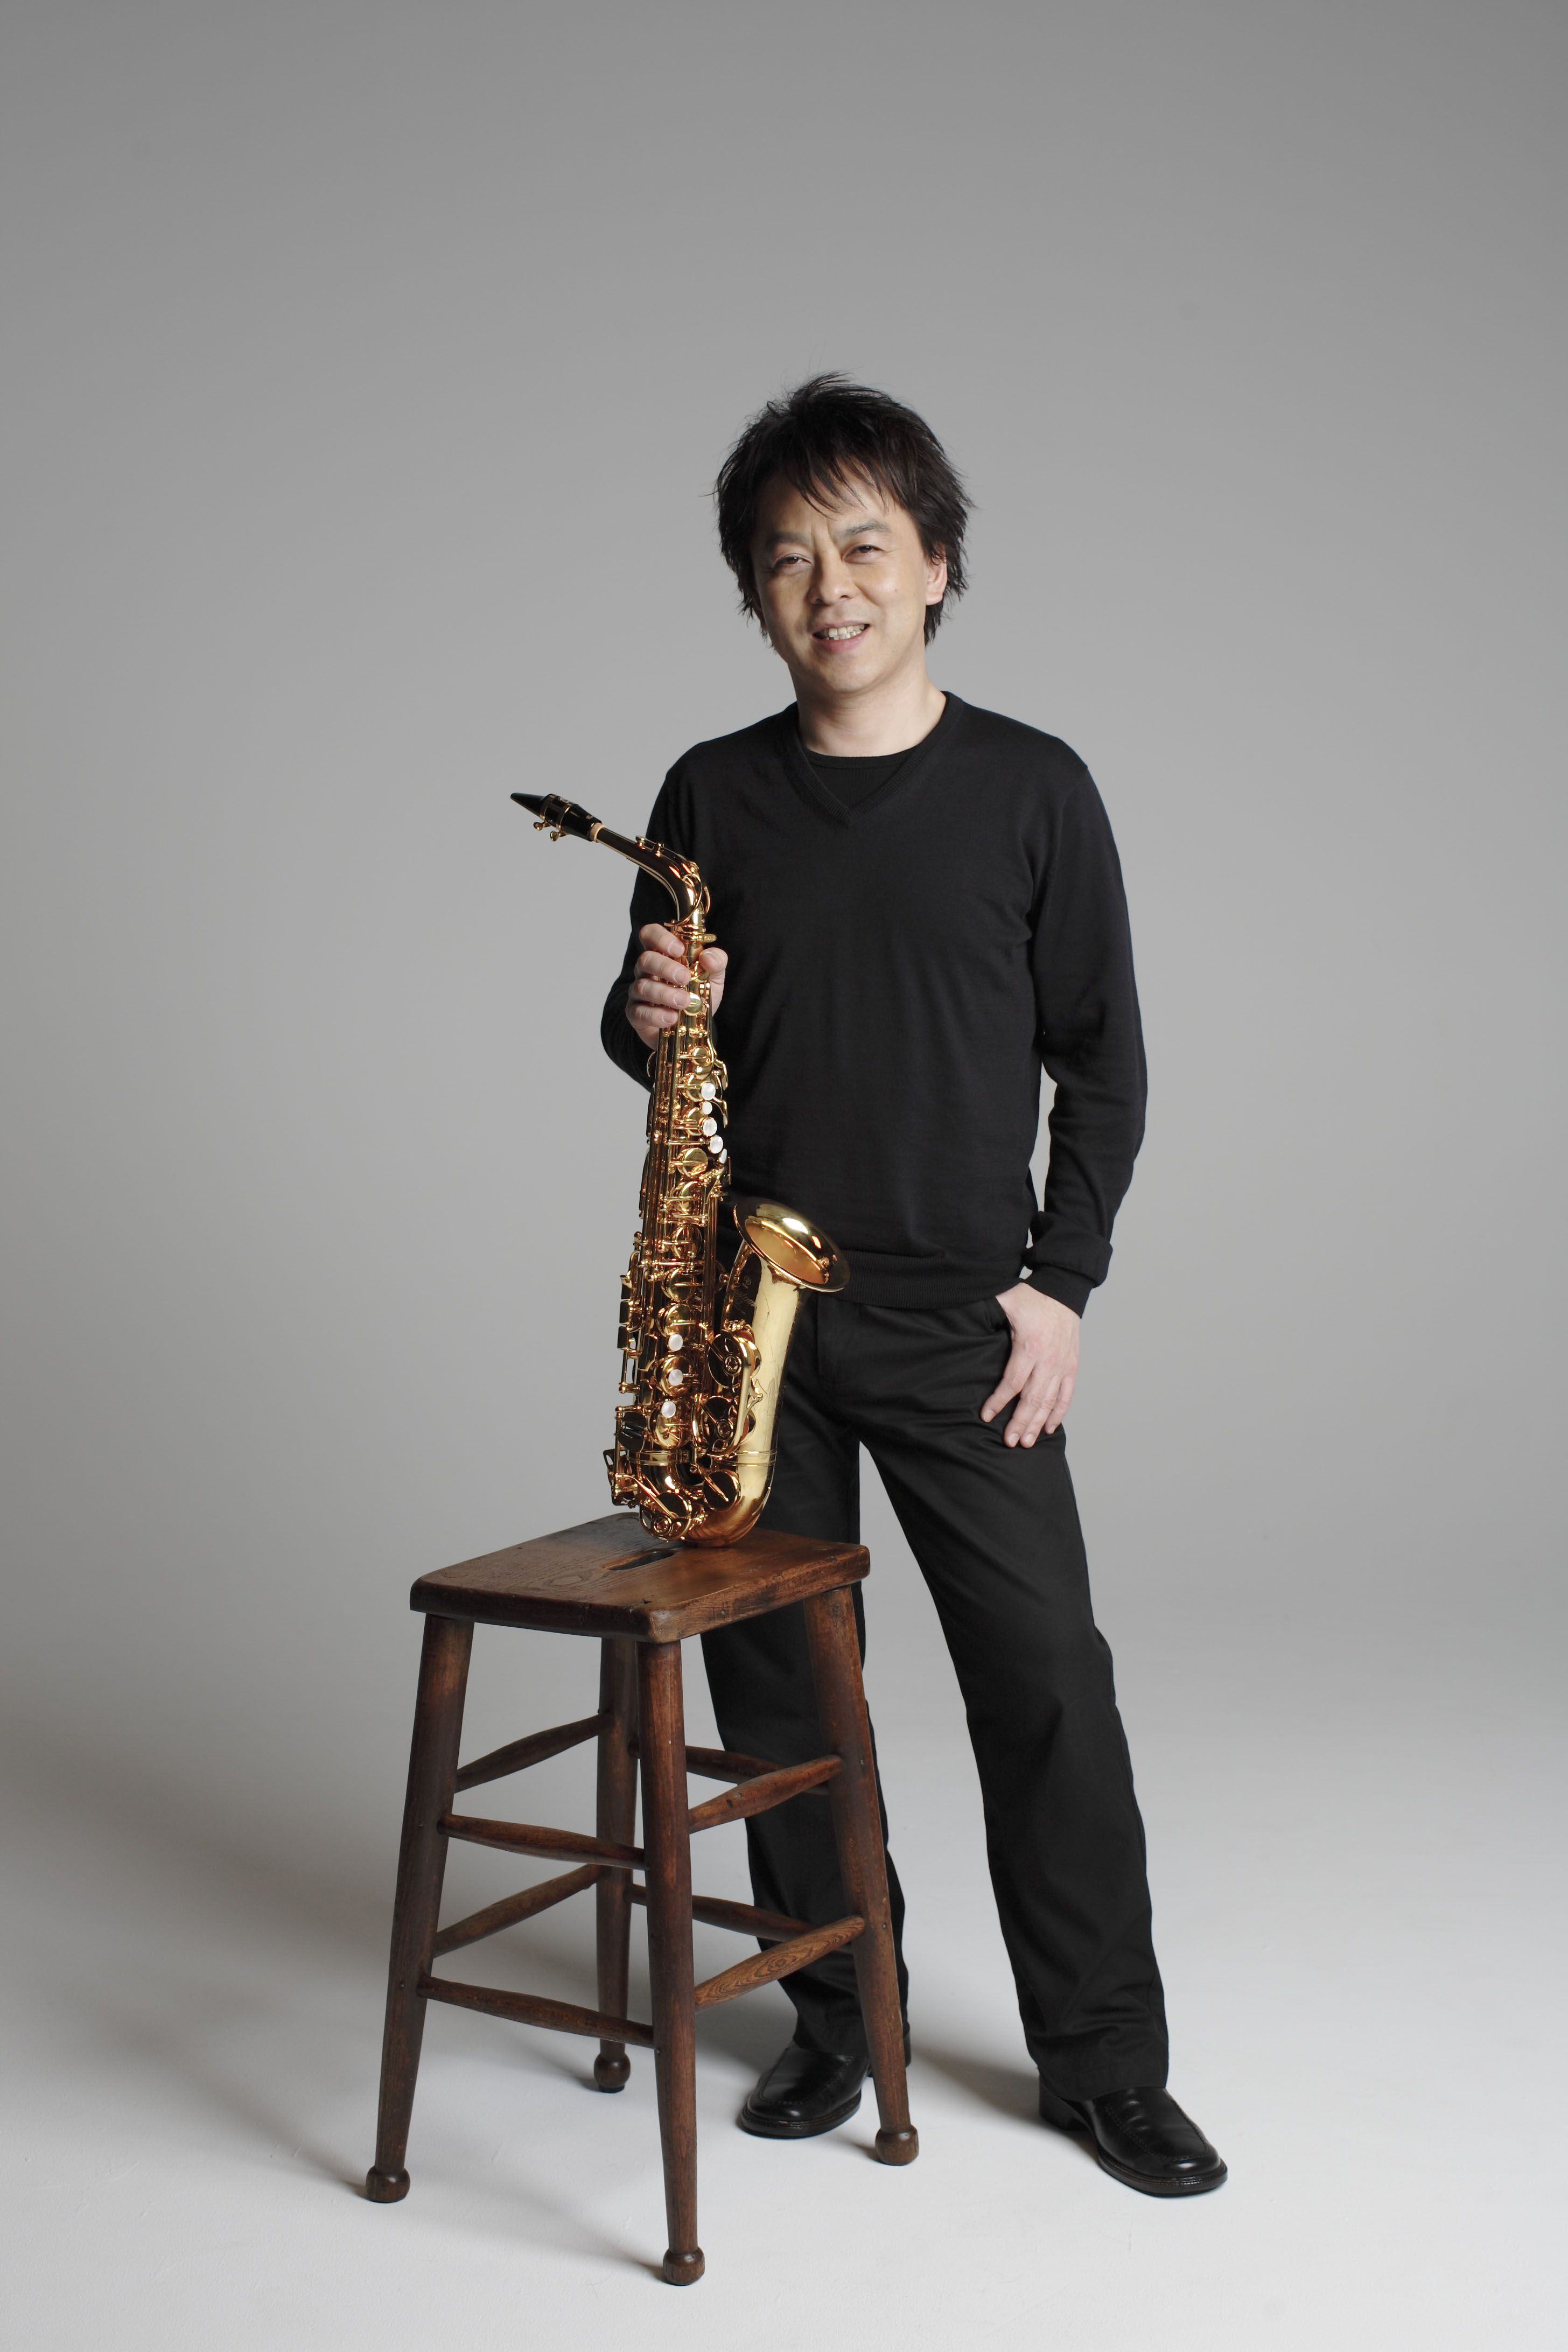 Takashi Yoshimatsu (1953): Concerto para saxofone e orquestra “Cyberbird”, Sinfonia Nº 3 – Nobuya Sugawa